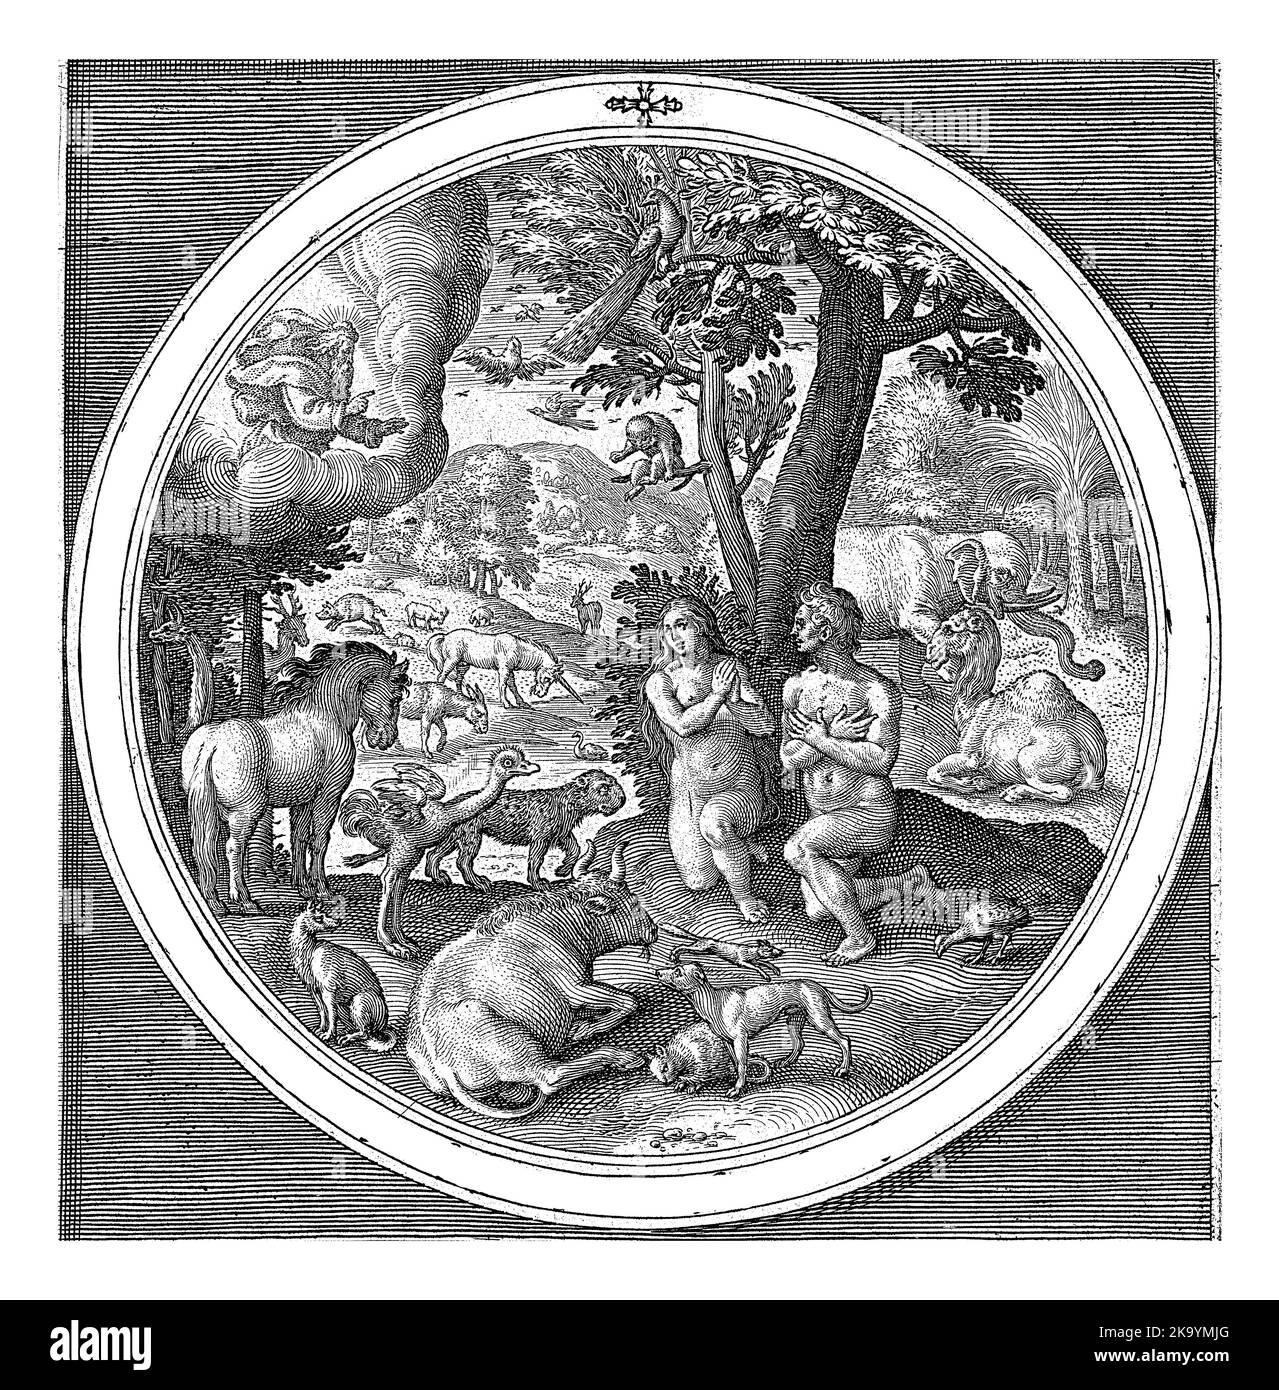 Le septième jour de la création: Adam et Eve au Paradis, Nicolaes de Bruyn, après Maerten de vos, 1581 - 1656 le septième jour de la création: Adam et Eve Banque D'Images